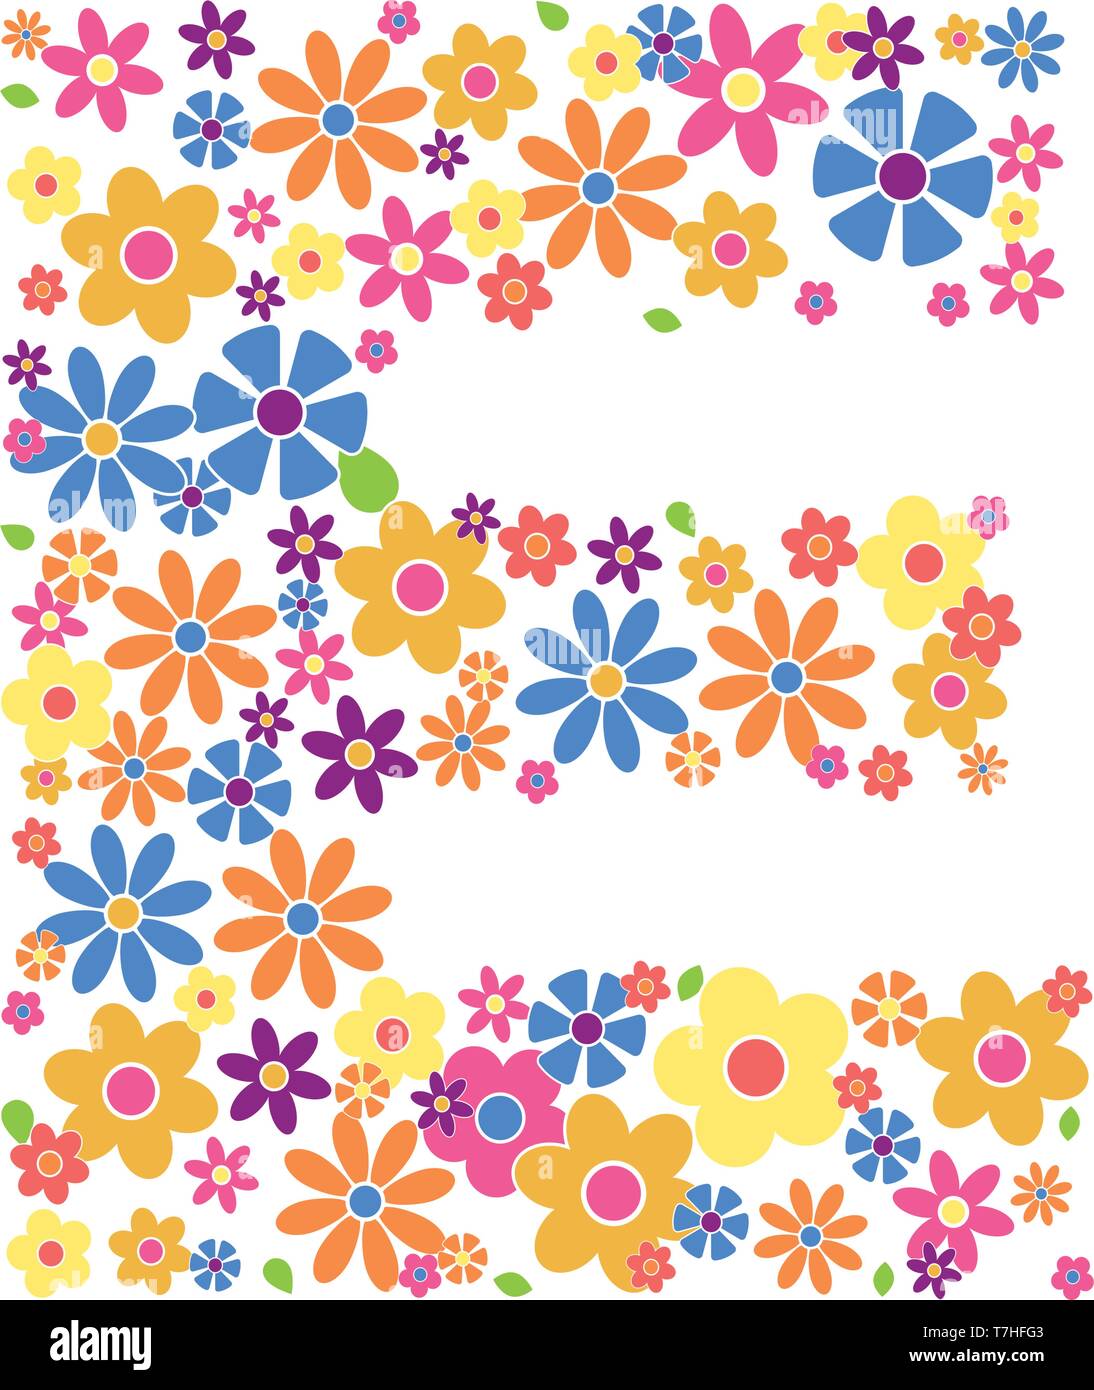 Buchstabe E gefüllt mit einer Vielzahl von bunten Blumen auf weißem Hintergrund Vektor-illustration isoliert Stock Vektor